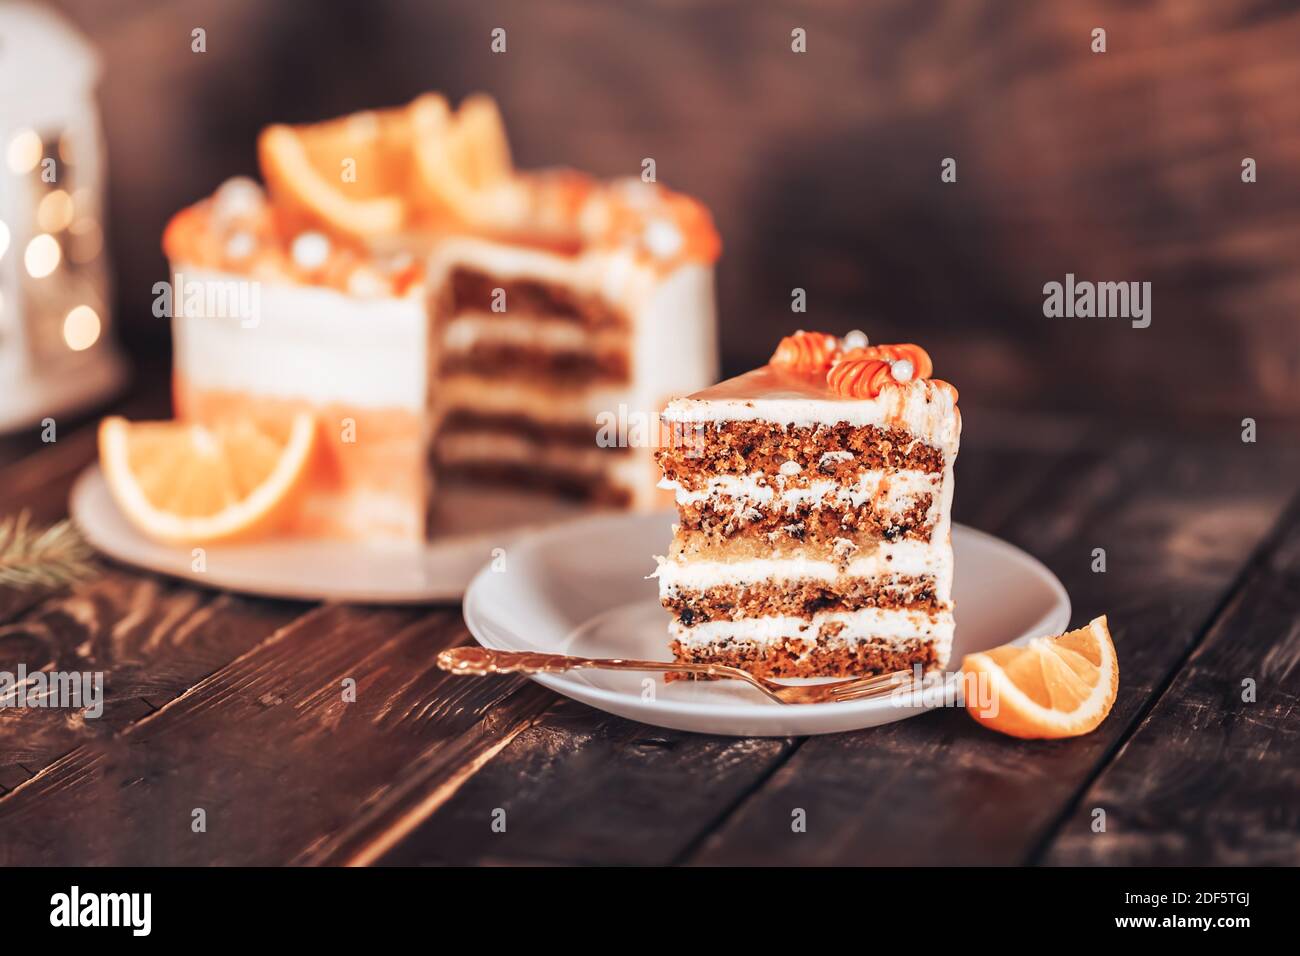 Découper le gâteau sur une assiette blanche avec une fourchette. Des bonbons pour toutes les vacances. Sur un fond de bois avec des guirlandes et une lanterne. Morceau de gâteau sur une assiette blanche Banque D'Images